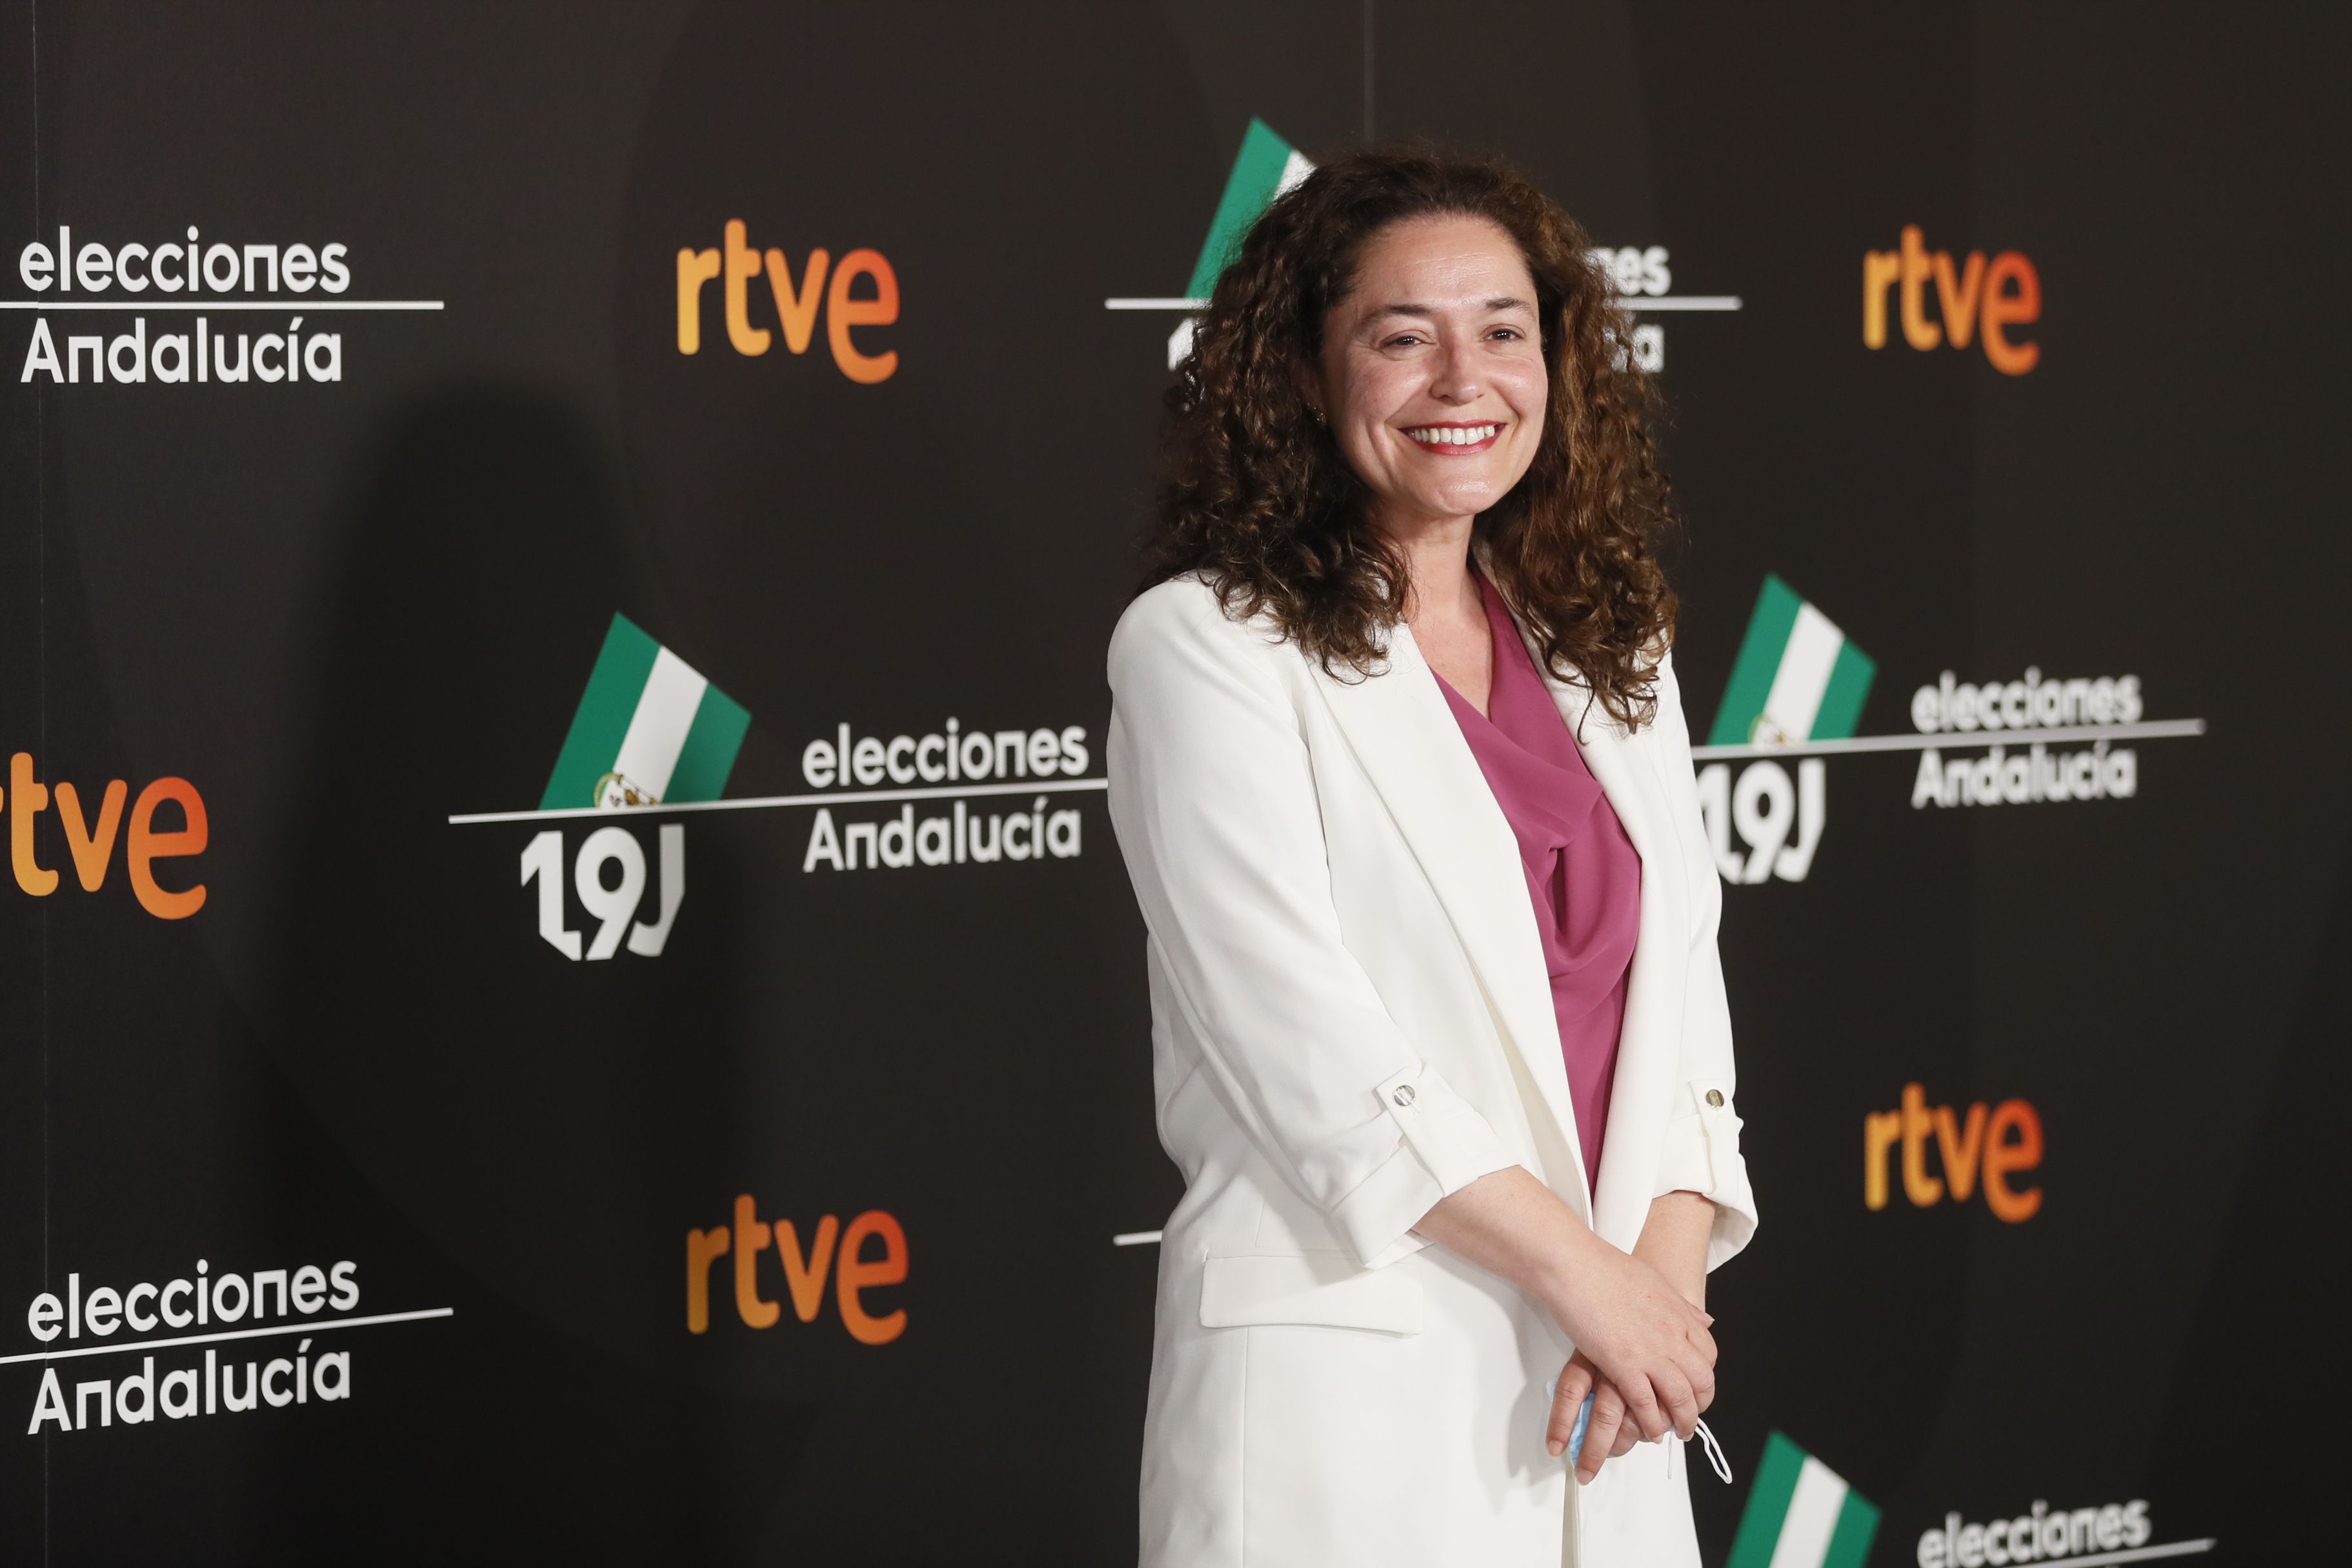 La candidata de Por Andalucía, Inmaculada Nieto, llega al primer debate electoral de cara a las elecciones legislativas andaluzas que tiene lugar este lunes en Sevilla. 